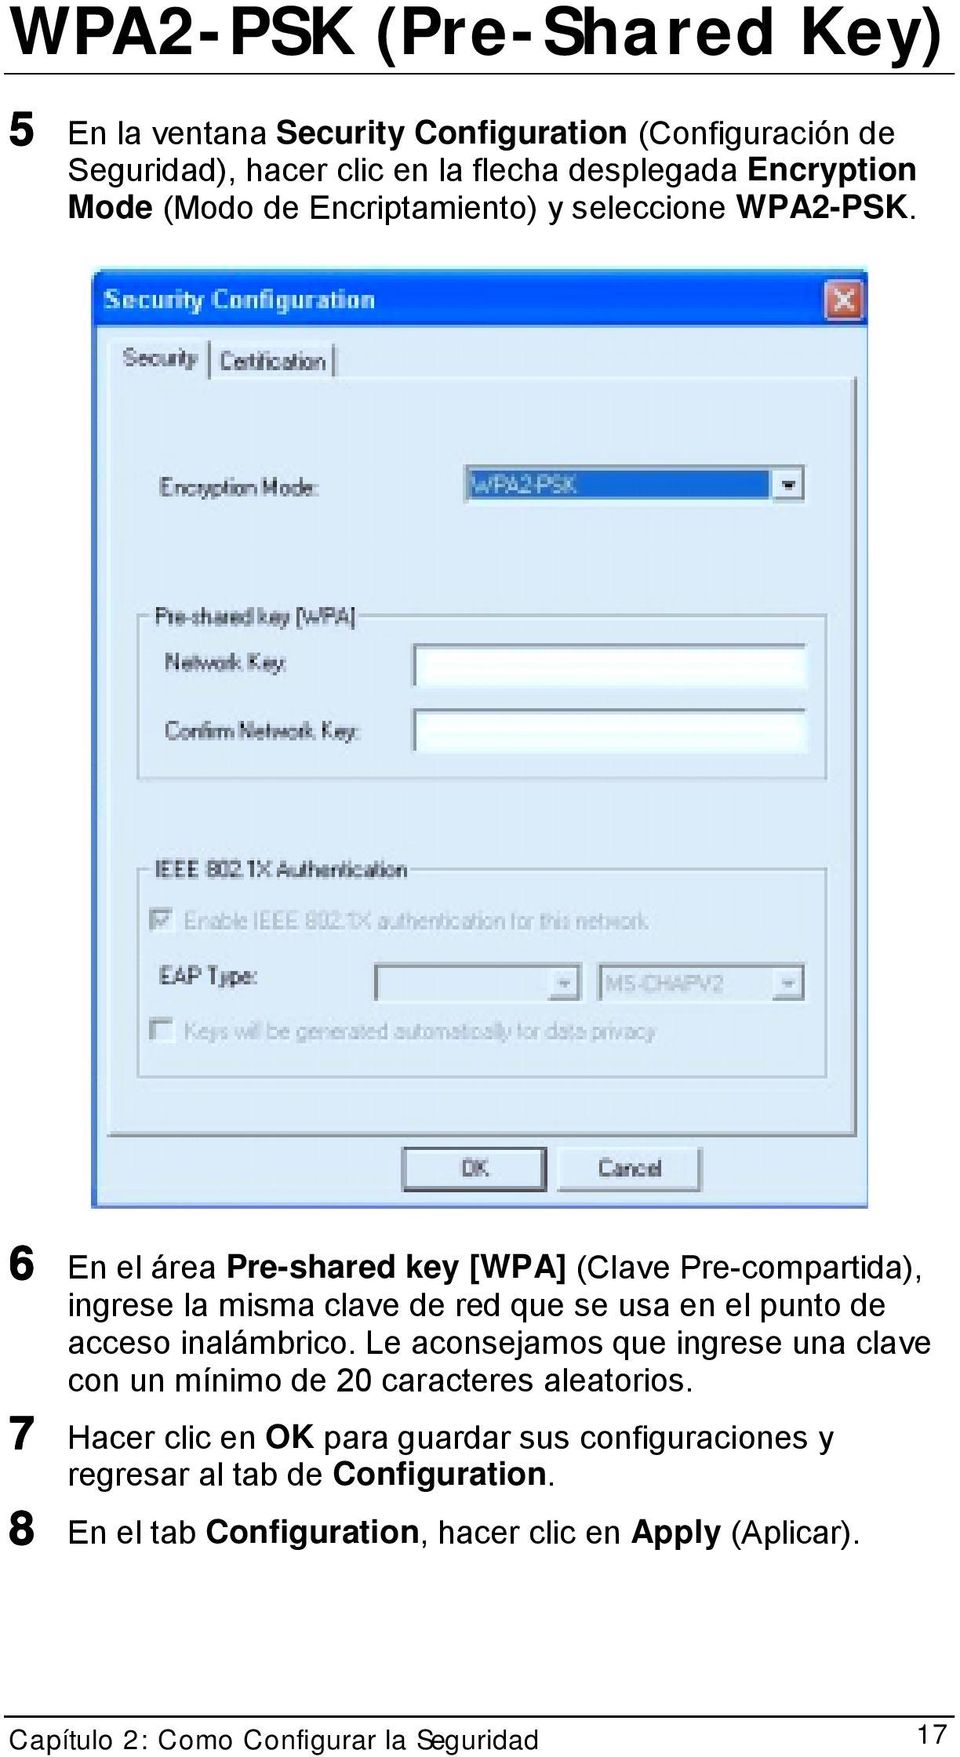 6 En el área Pre-shared key [WPA] (Clave Pre-compartida), ingrese la misma clave de red que se usa en el punto de acceso inalámbrico.